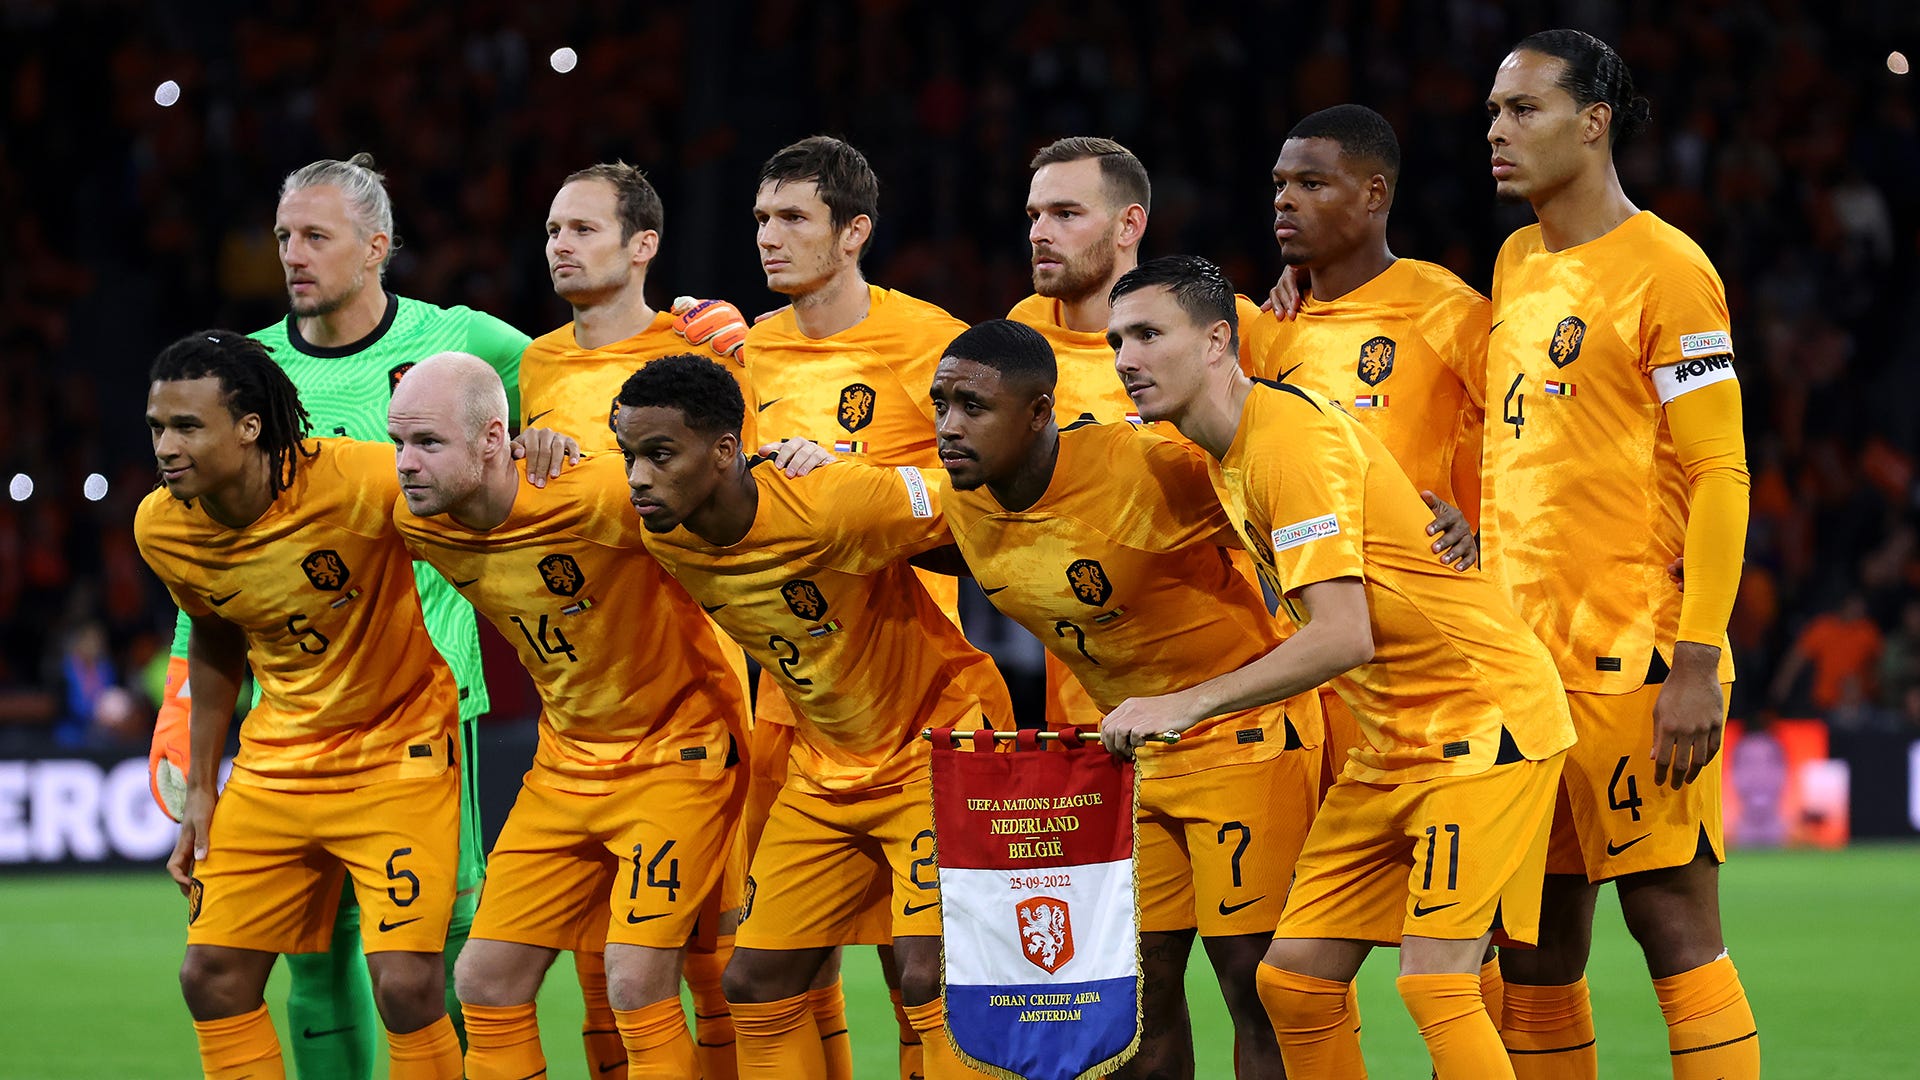 W杯 サッカー オランダ代表ユニホーム 通販